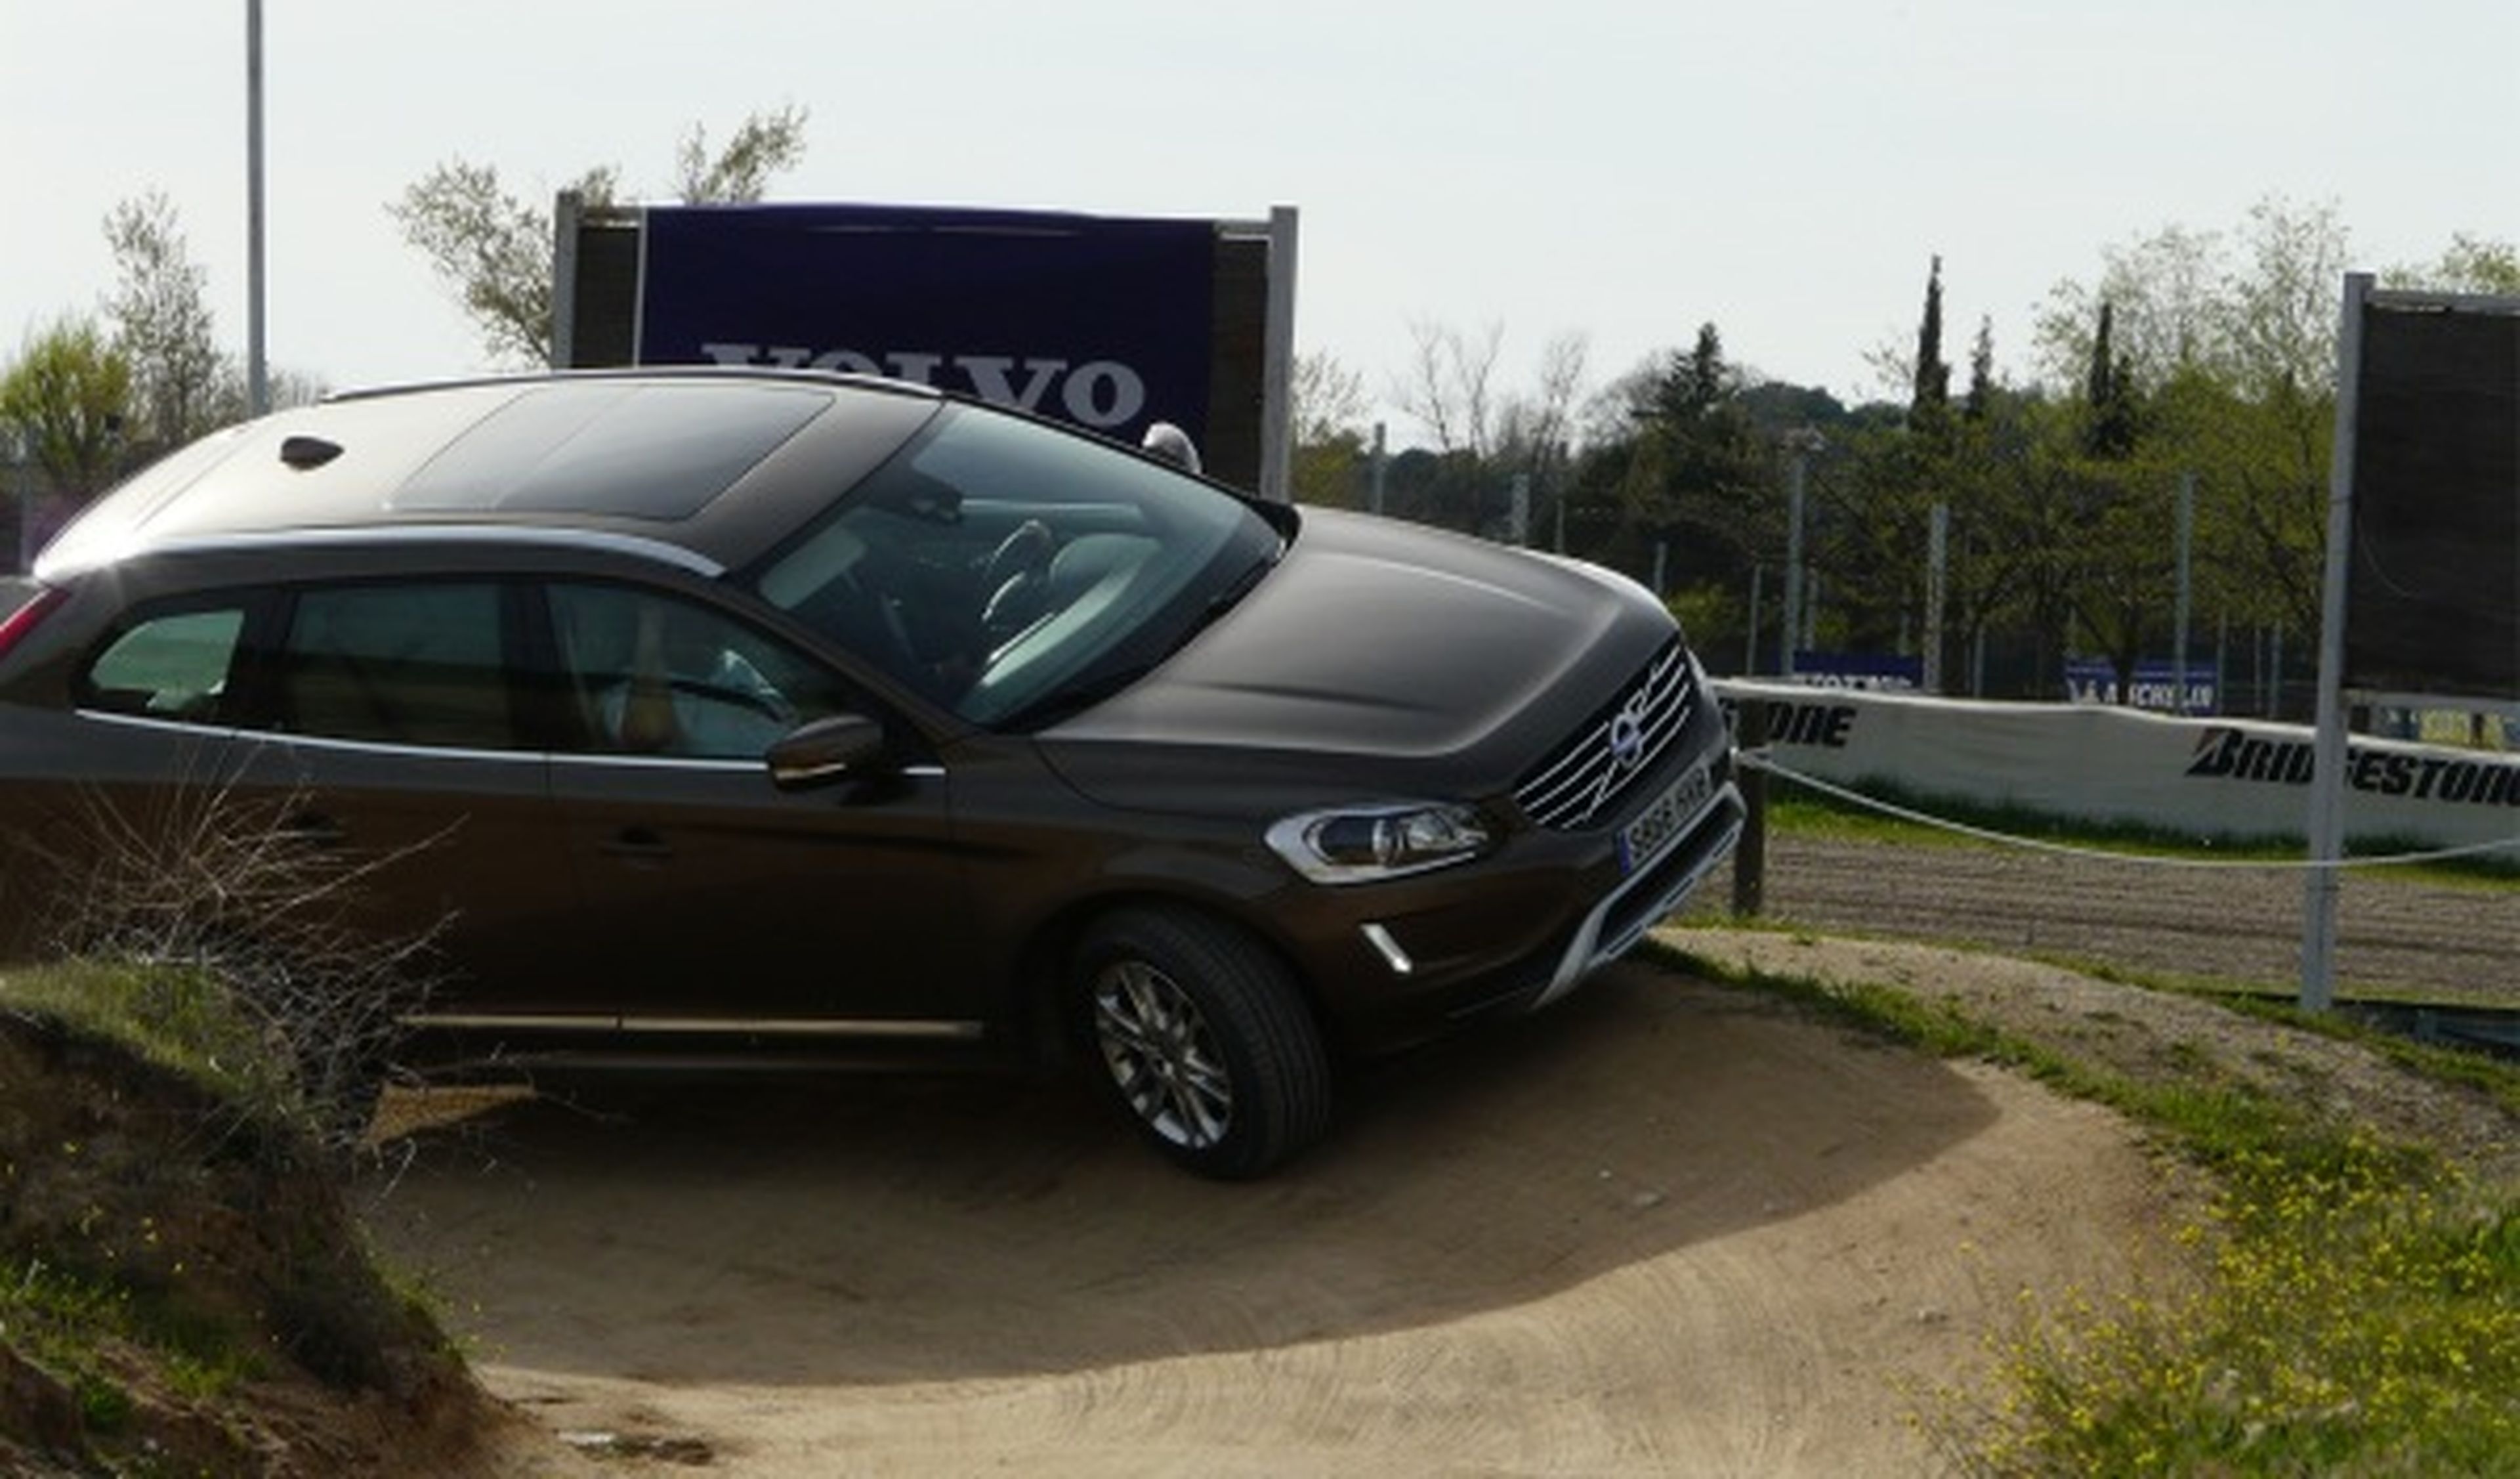 Jornadas de Conducción Segura de Volvo 2014 en el Jarama